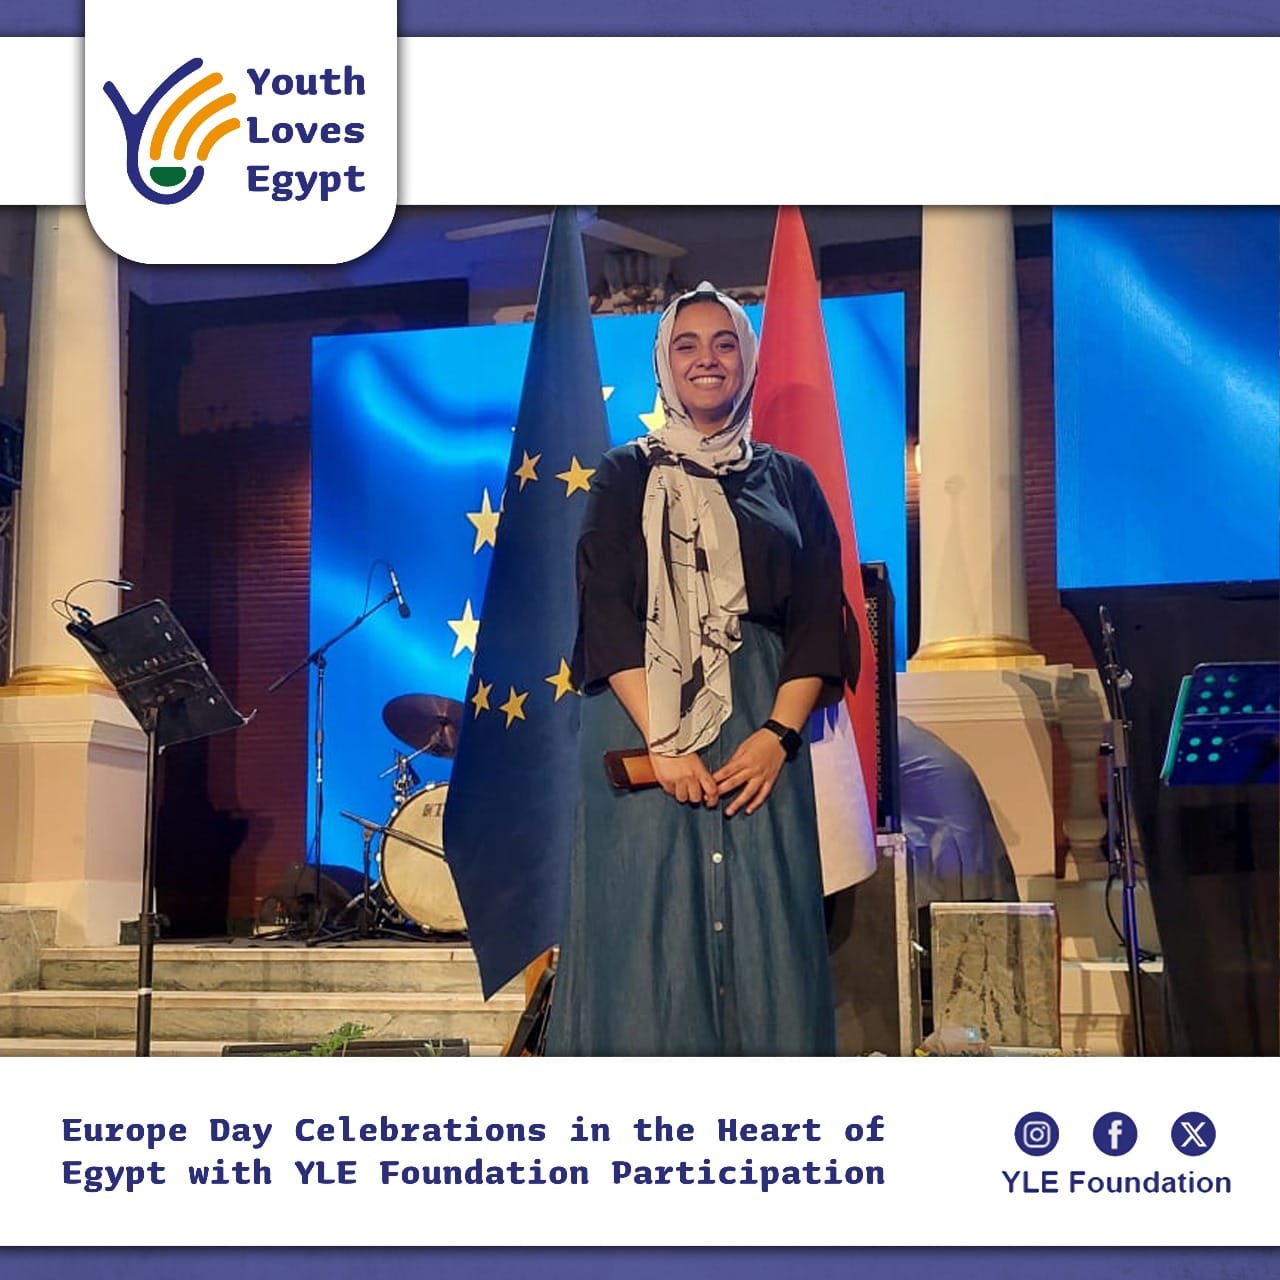 احتفالات يوم أوروبا في قلب مصر بمشاركة من شباب بتحب مصر